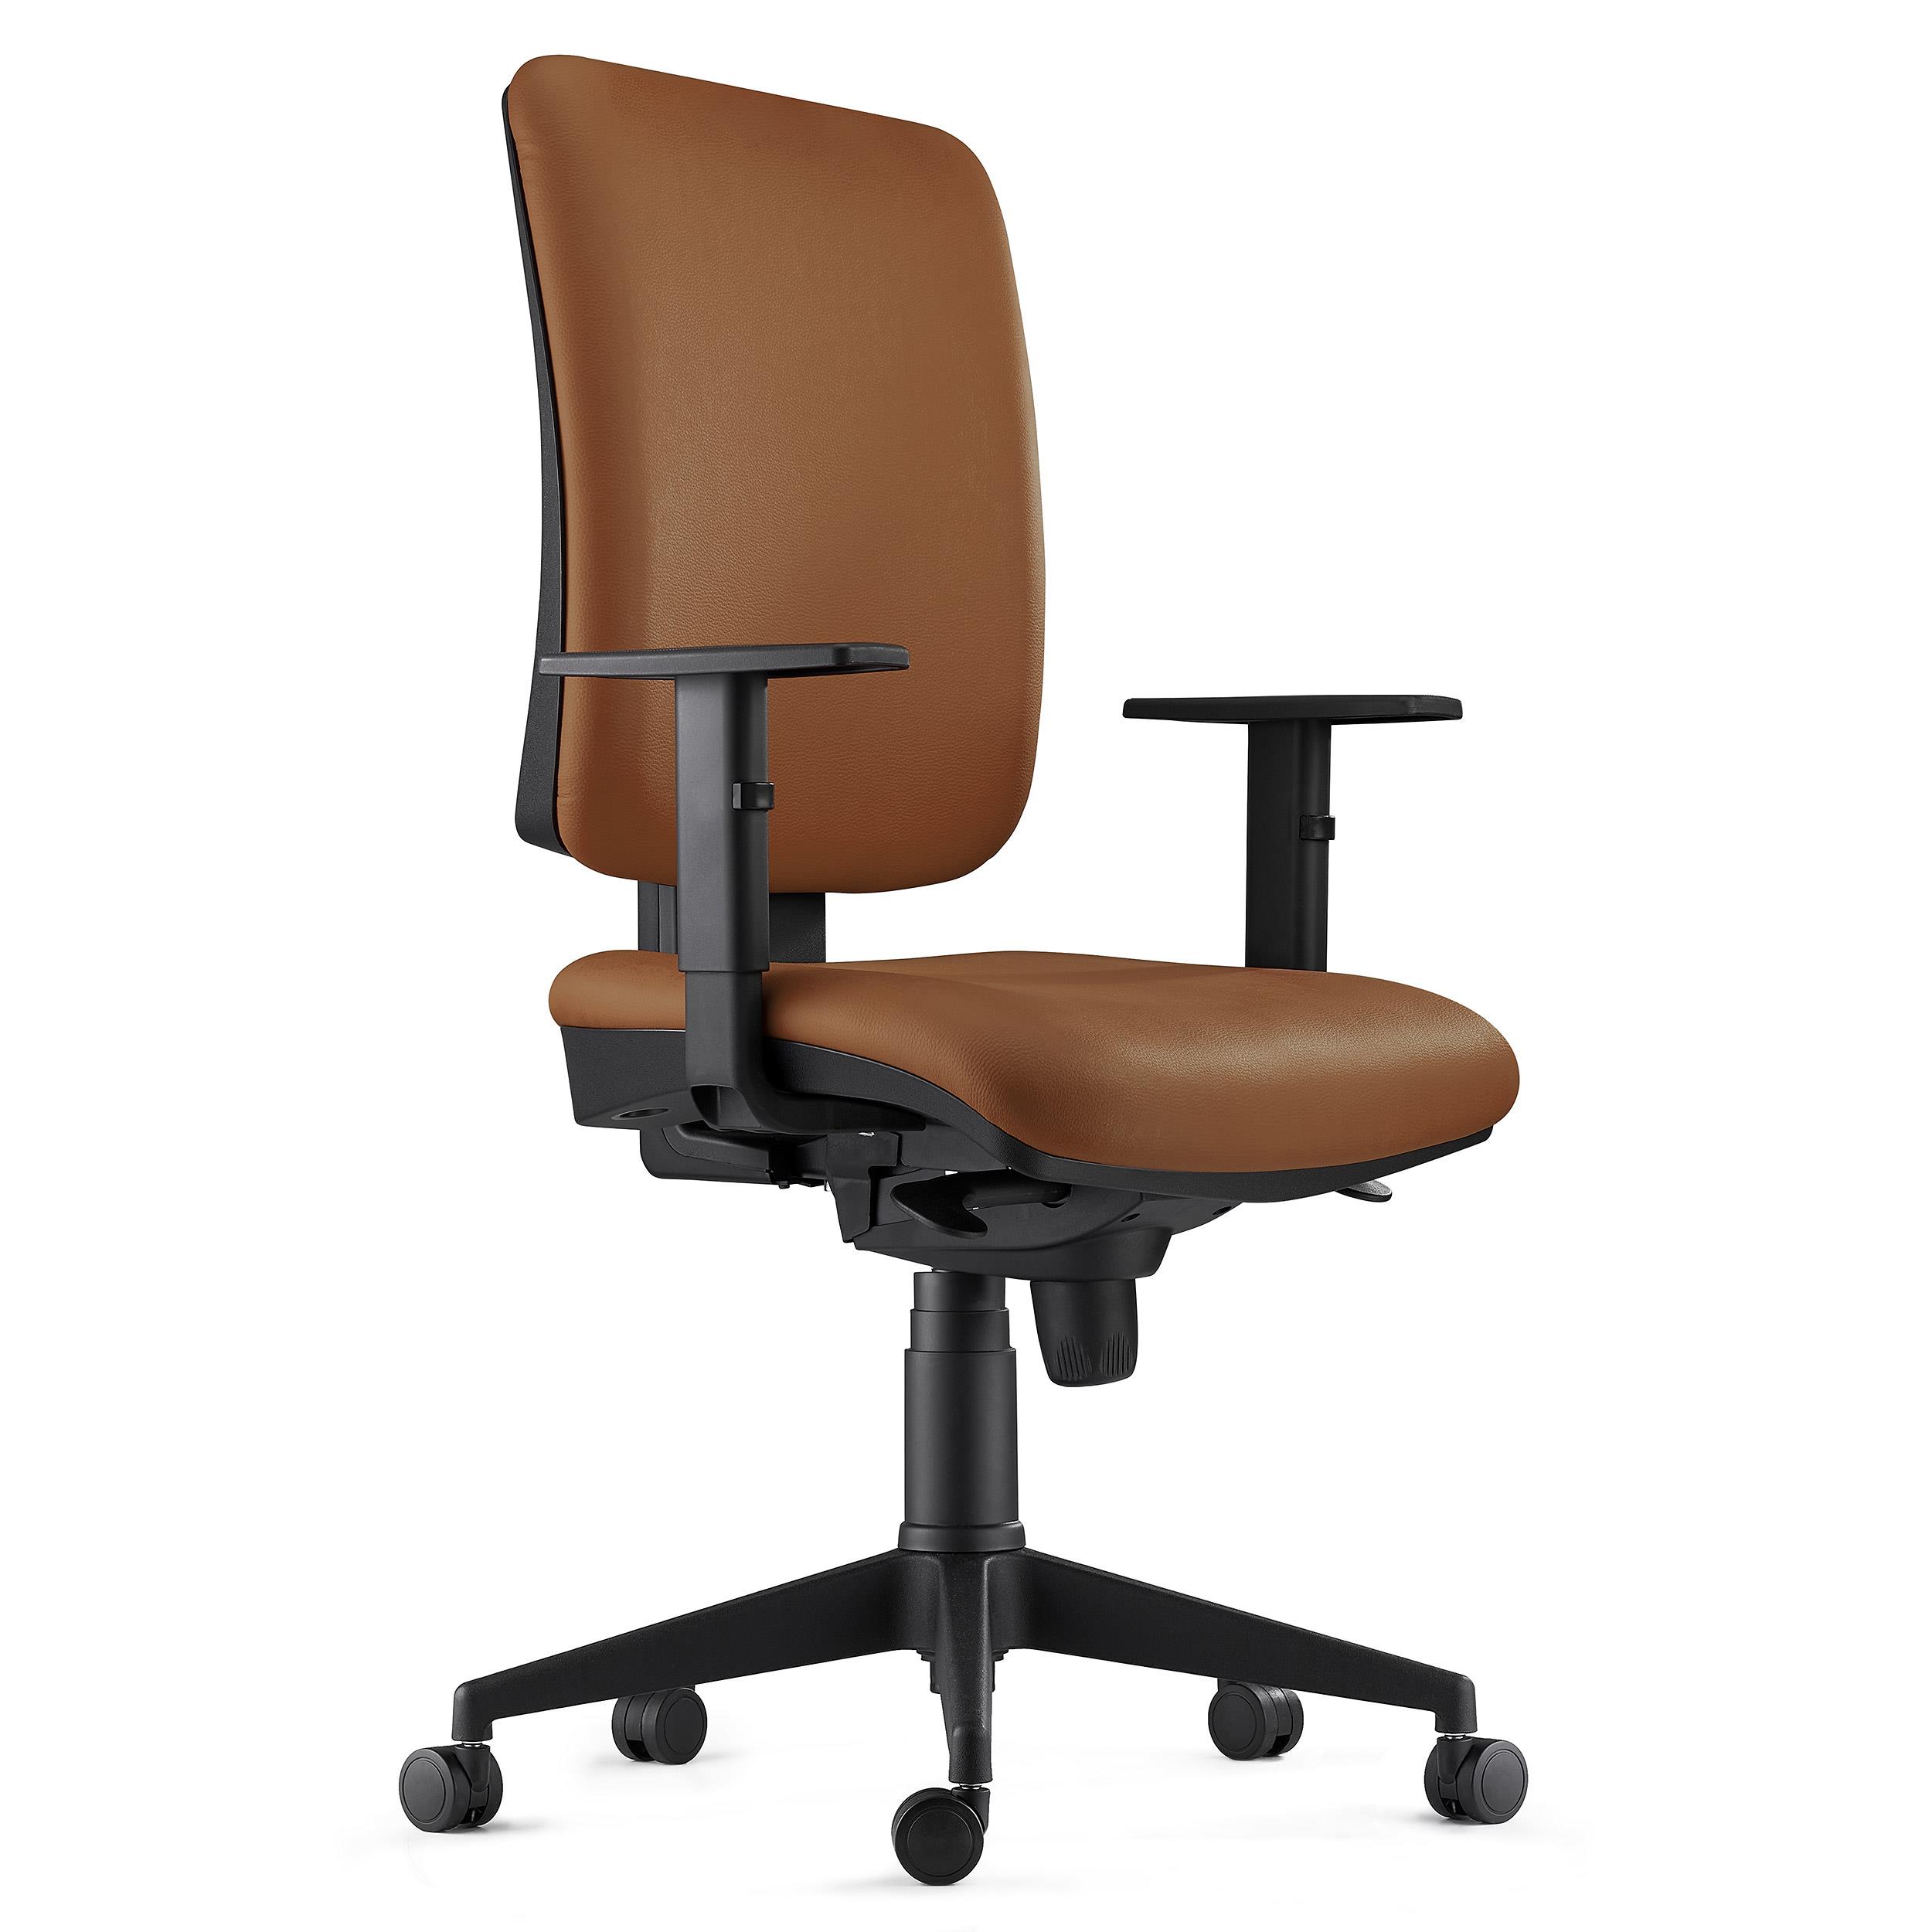 Chaise ergonomique PIERO, Accoudoirs Ajustables, en Cuir Authentique Marron